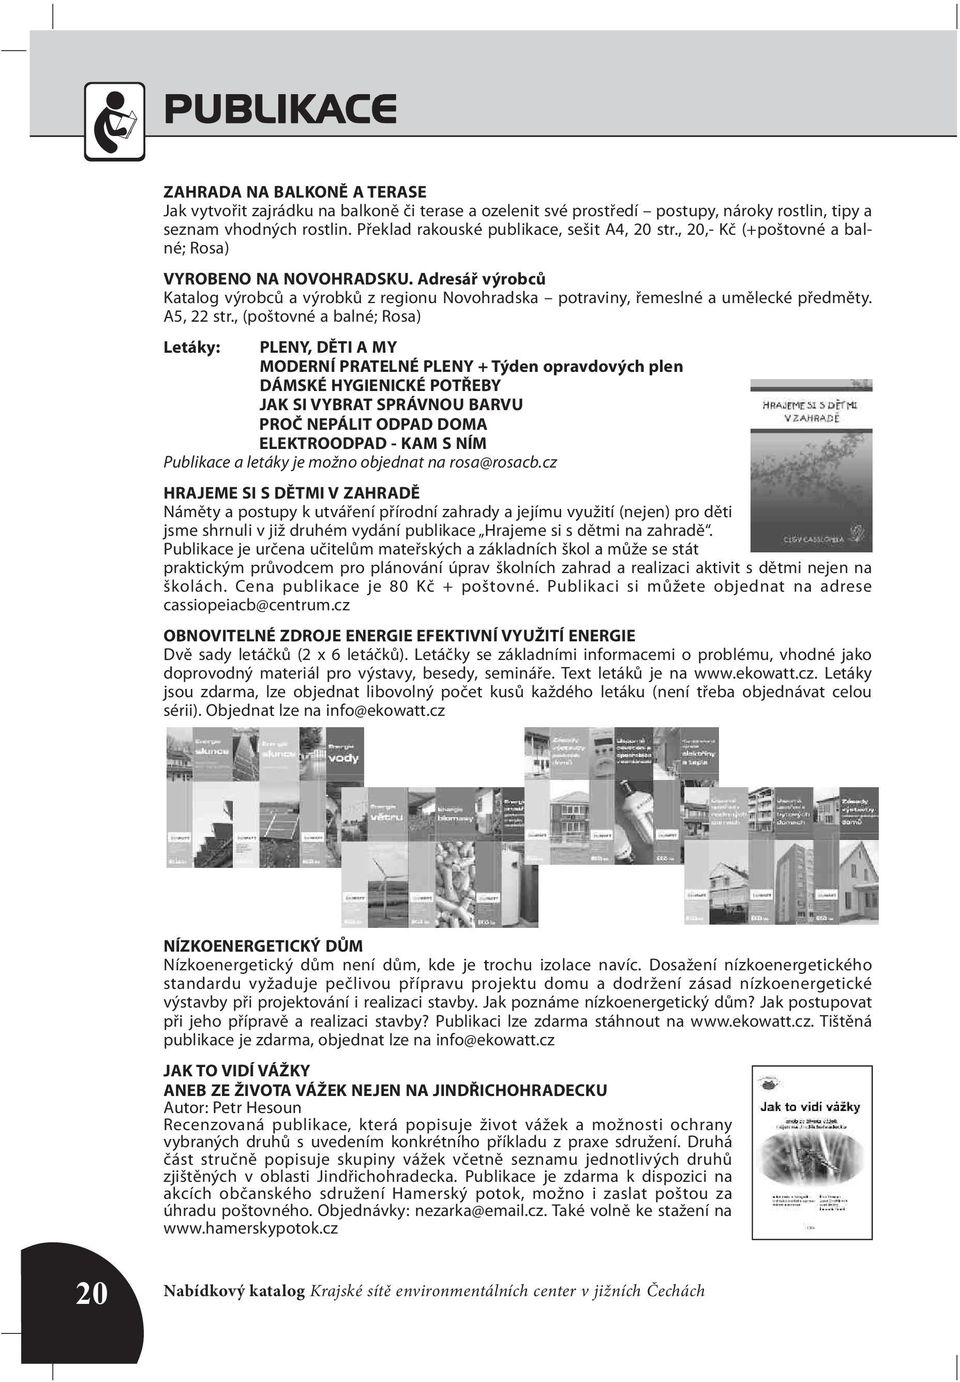 Adresář výrobců Katalog výrobců a výrobků z regionu Novohradska potraviny, řemeslné a umělecké předměty. A5, 22 str.